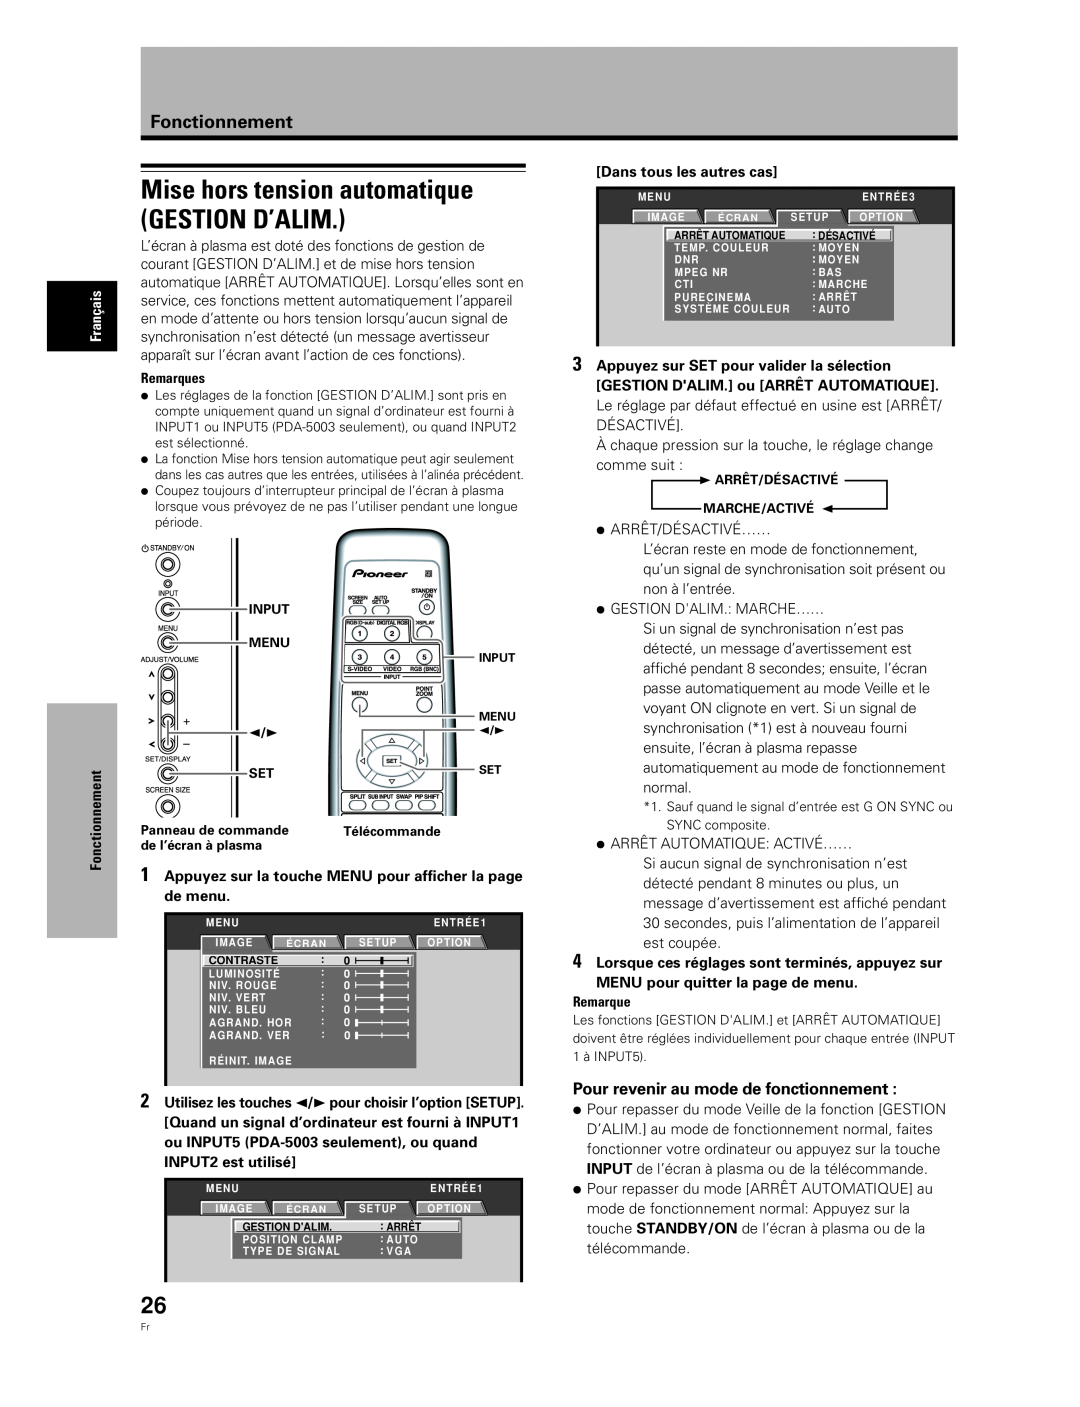 Pioneer PDA-5004 Mise hors tension automatique GESTION D’ALIM, Pour revenir au mode de fonctionnement, Fonctionnement 